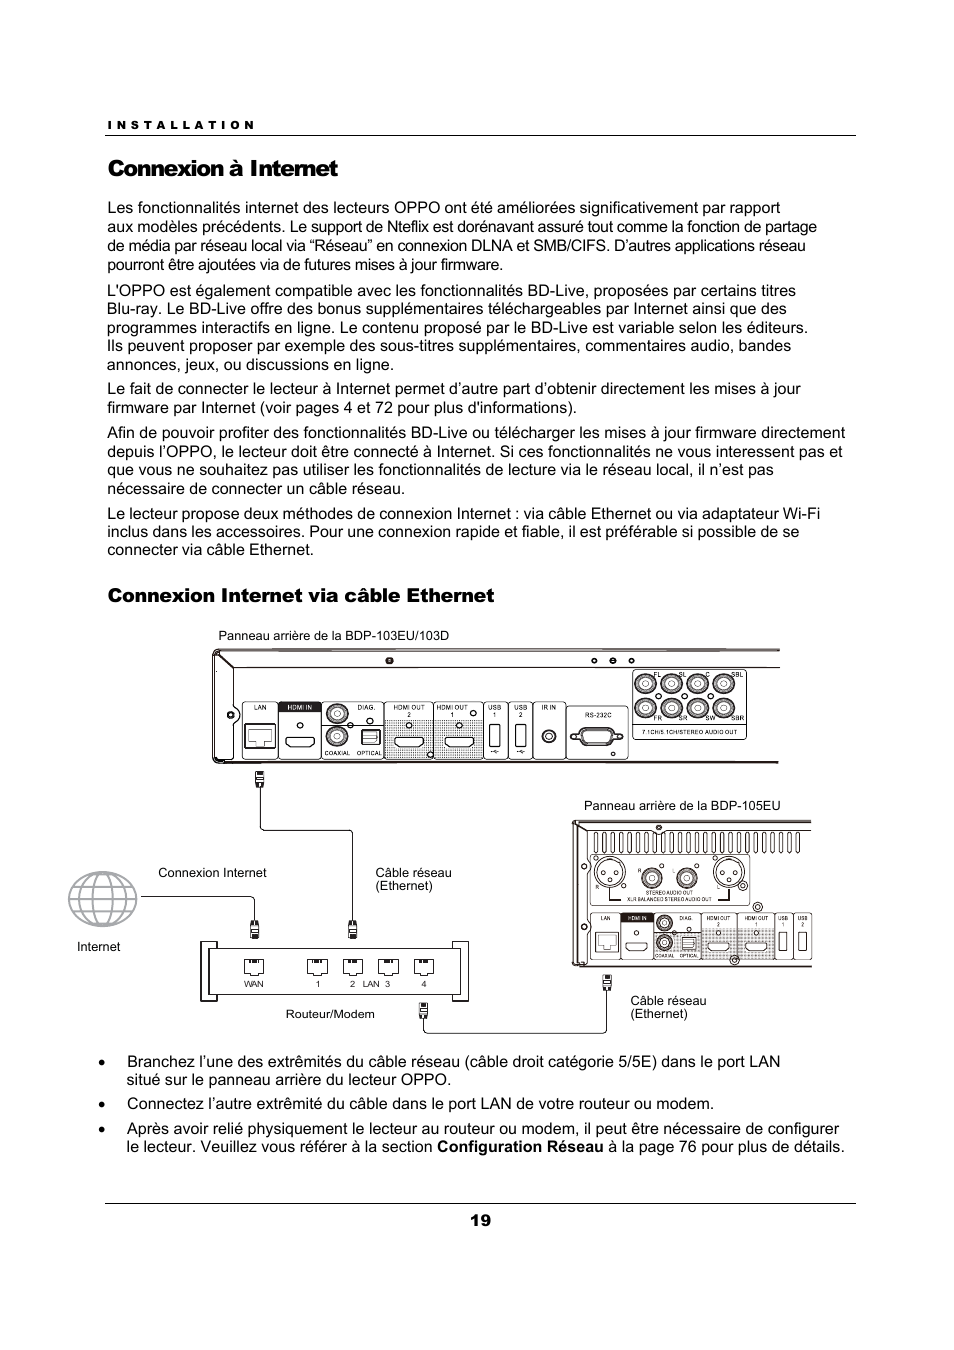 Connexion à internet, Connexion internet via câble ethernet | Oppo BDP-103D Manuel d'utilisation | Page 23 / 94